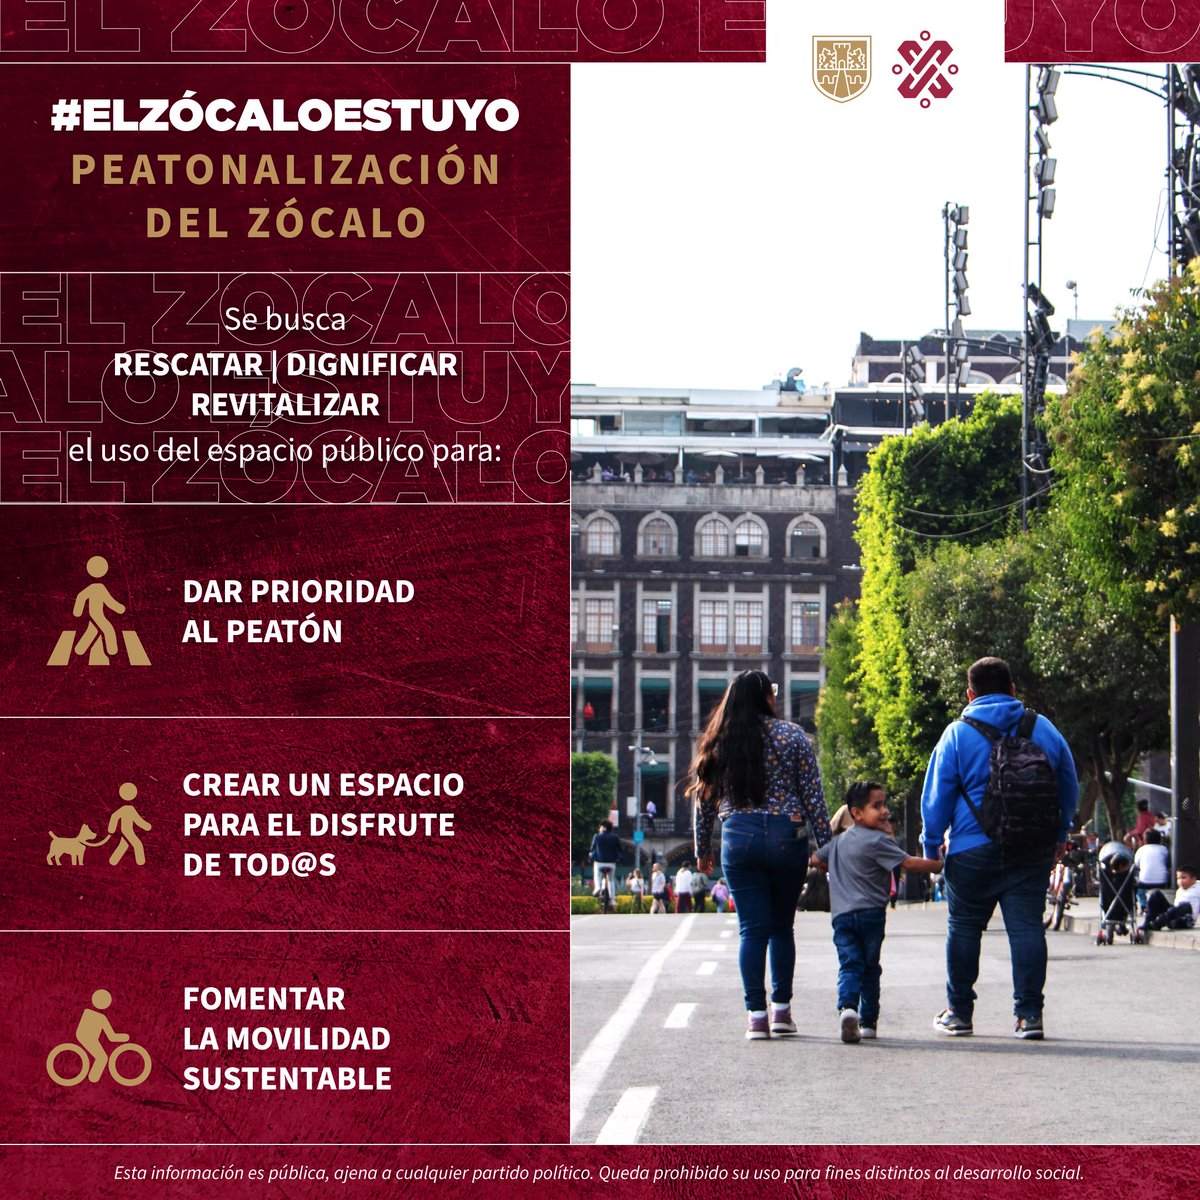 #ElZócaloEsTuyo | Con la peatonalización total del Zócalo de la Ciudad de México, por parte del @GobCDMX, se busca permitir la apreciación y fomentar el cuidado de la configuración urbana de este espacio público conformado por diversas etapas históricas y culturales.